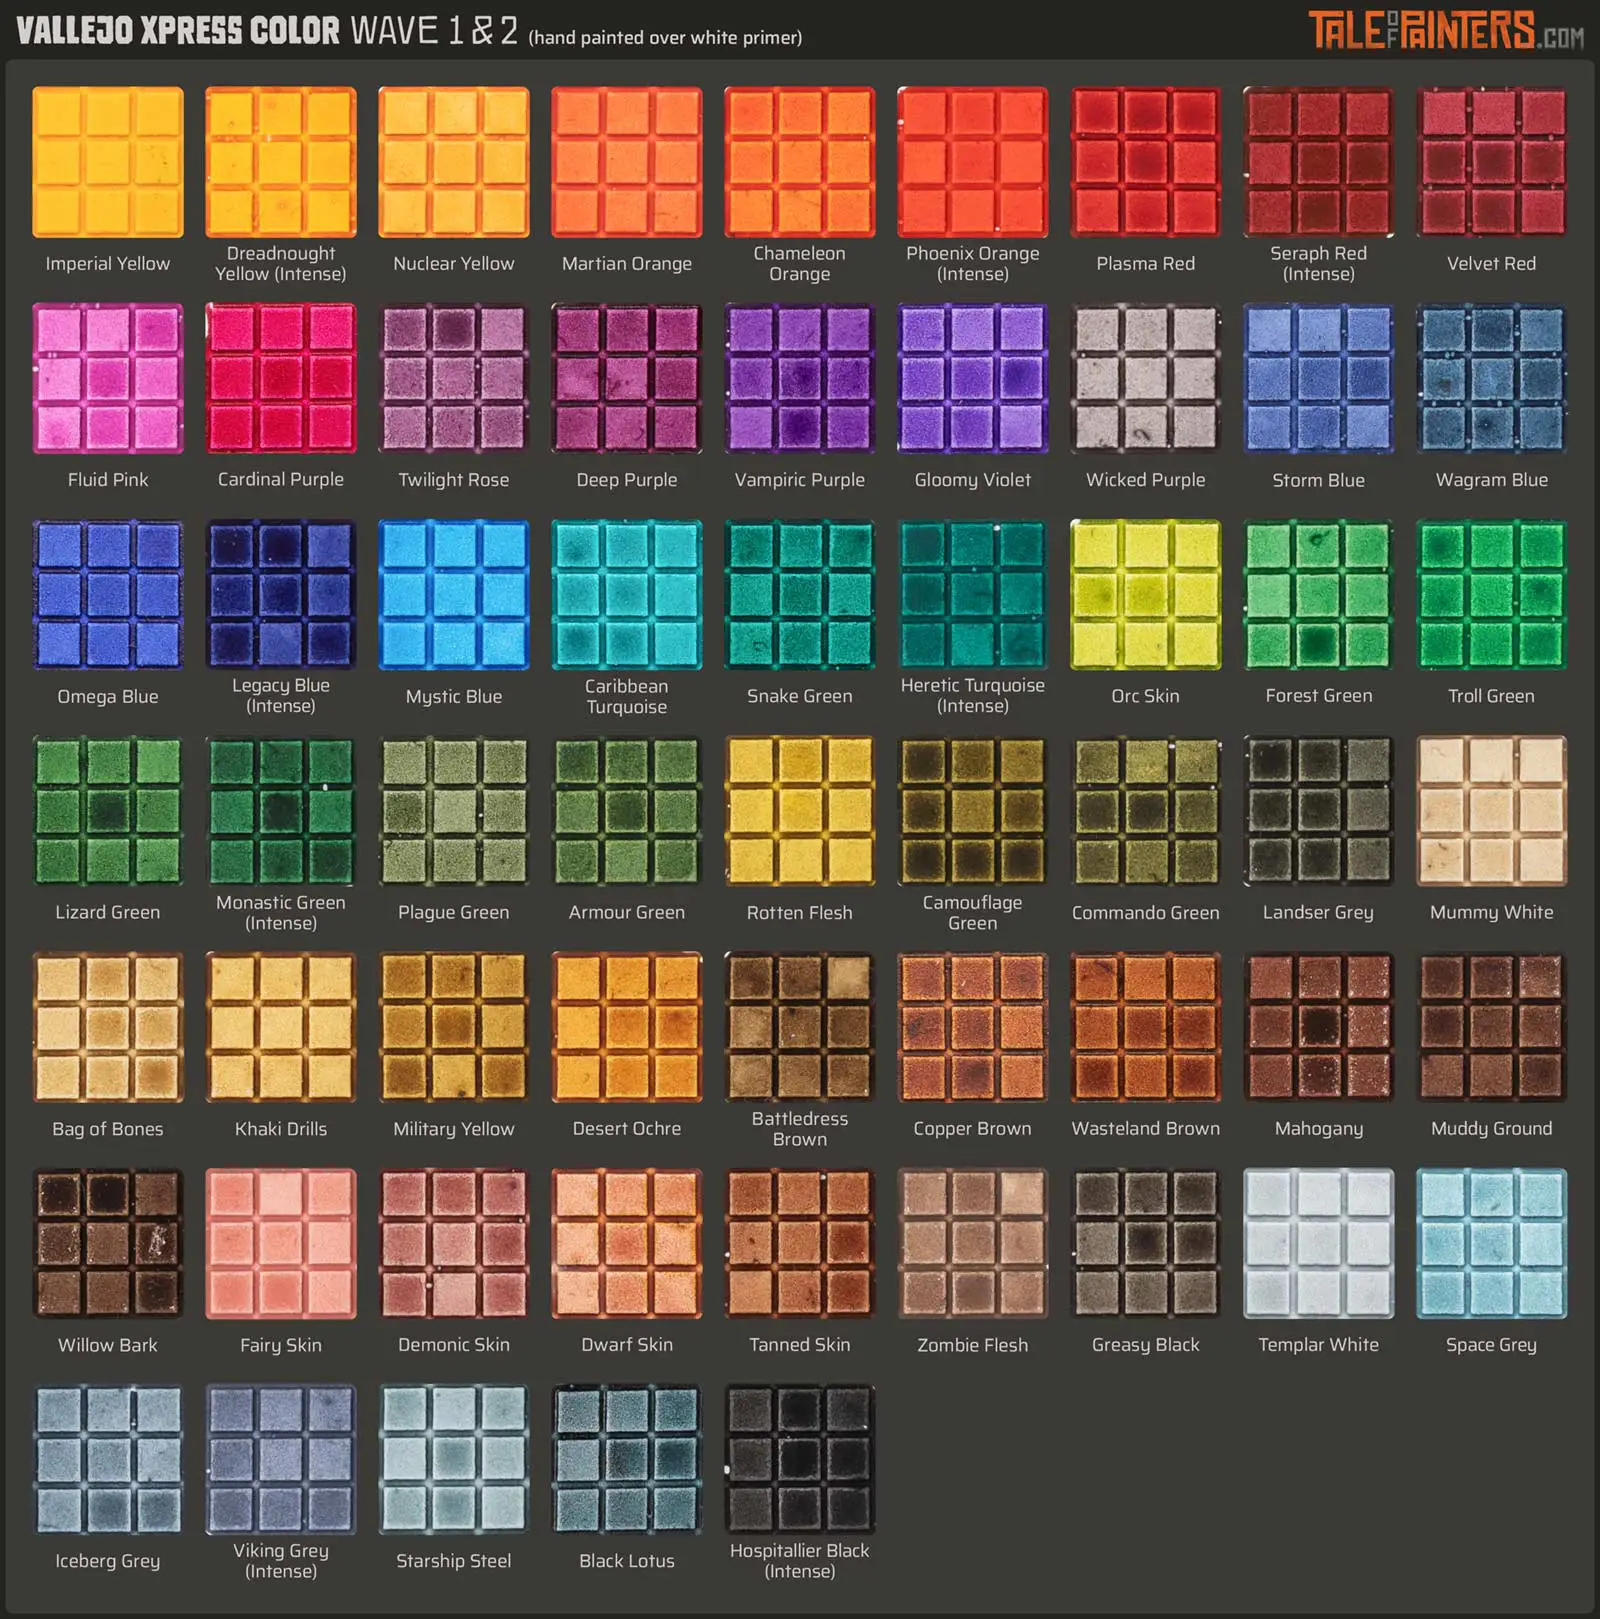 Speedpaint Complete Set 2.0 PLUS: Incl. 90 colours! - The Army Painter